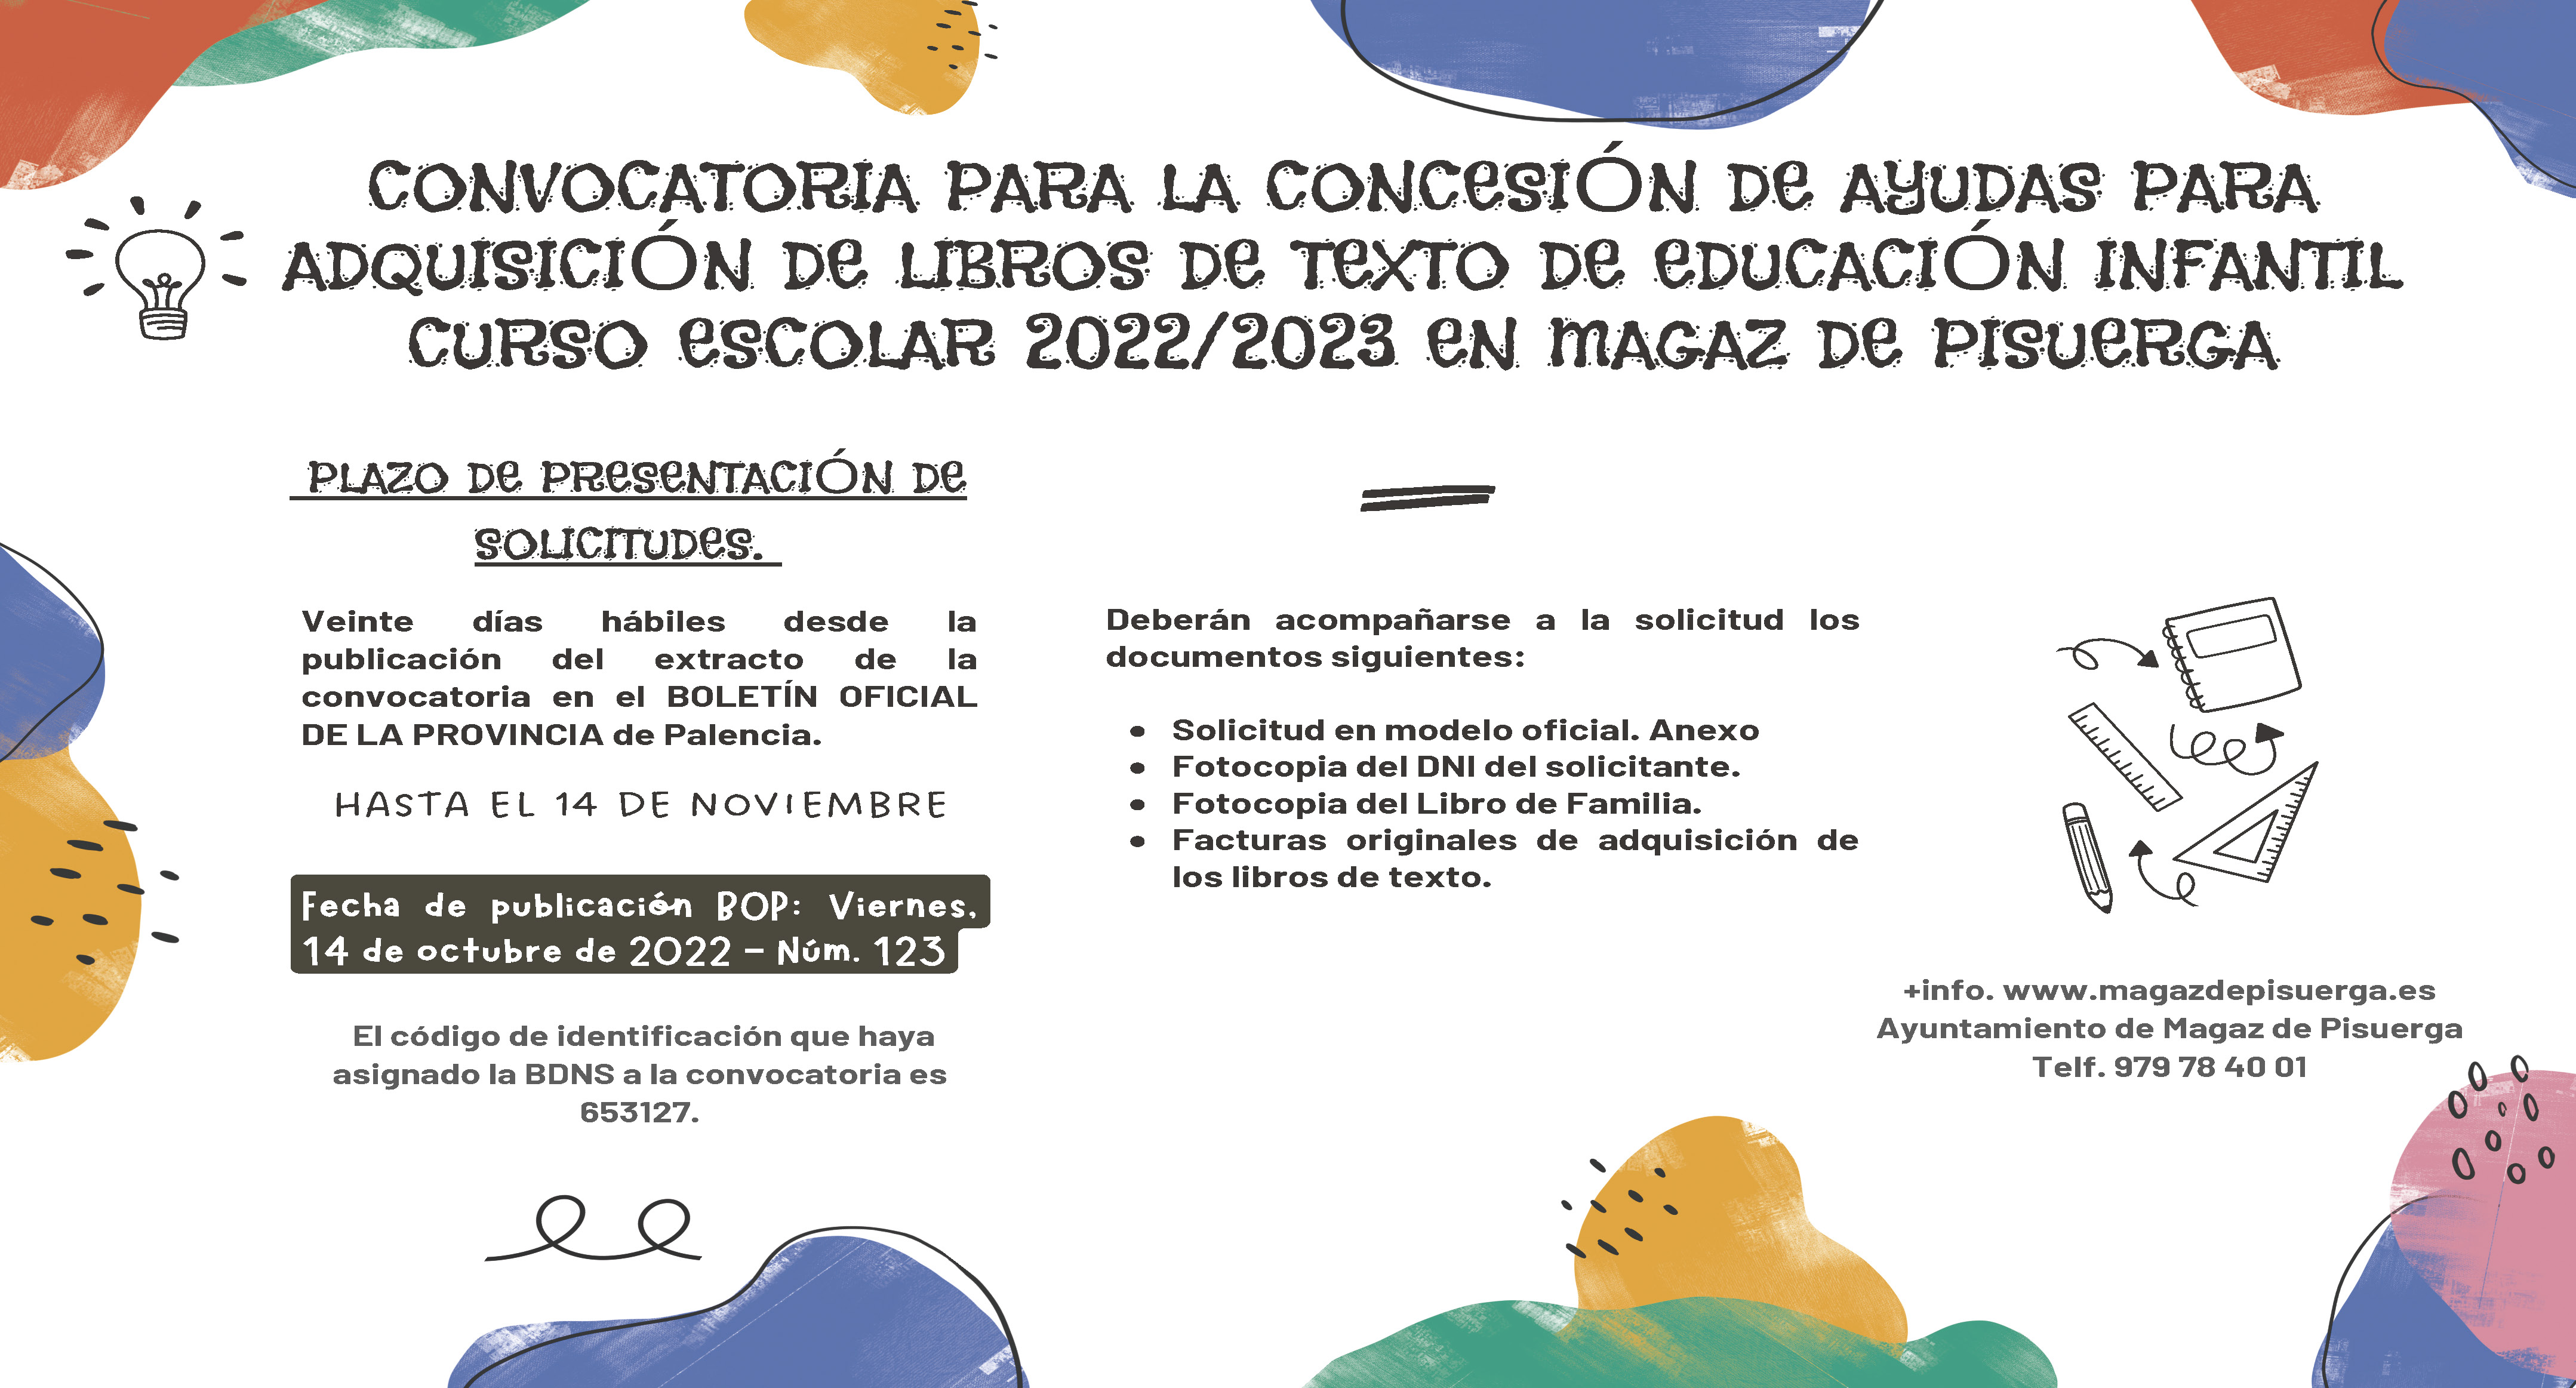 CONVOCATORIA PARA LA CONCESIÓN DE AYUDAS PARA ADQUISICIÓN DE LIBROS DE TEXTO DE EDUCACIÓN INFANTIL CURSO ESCOLAR 2022/2023